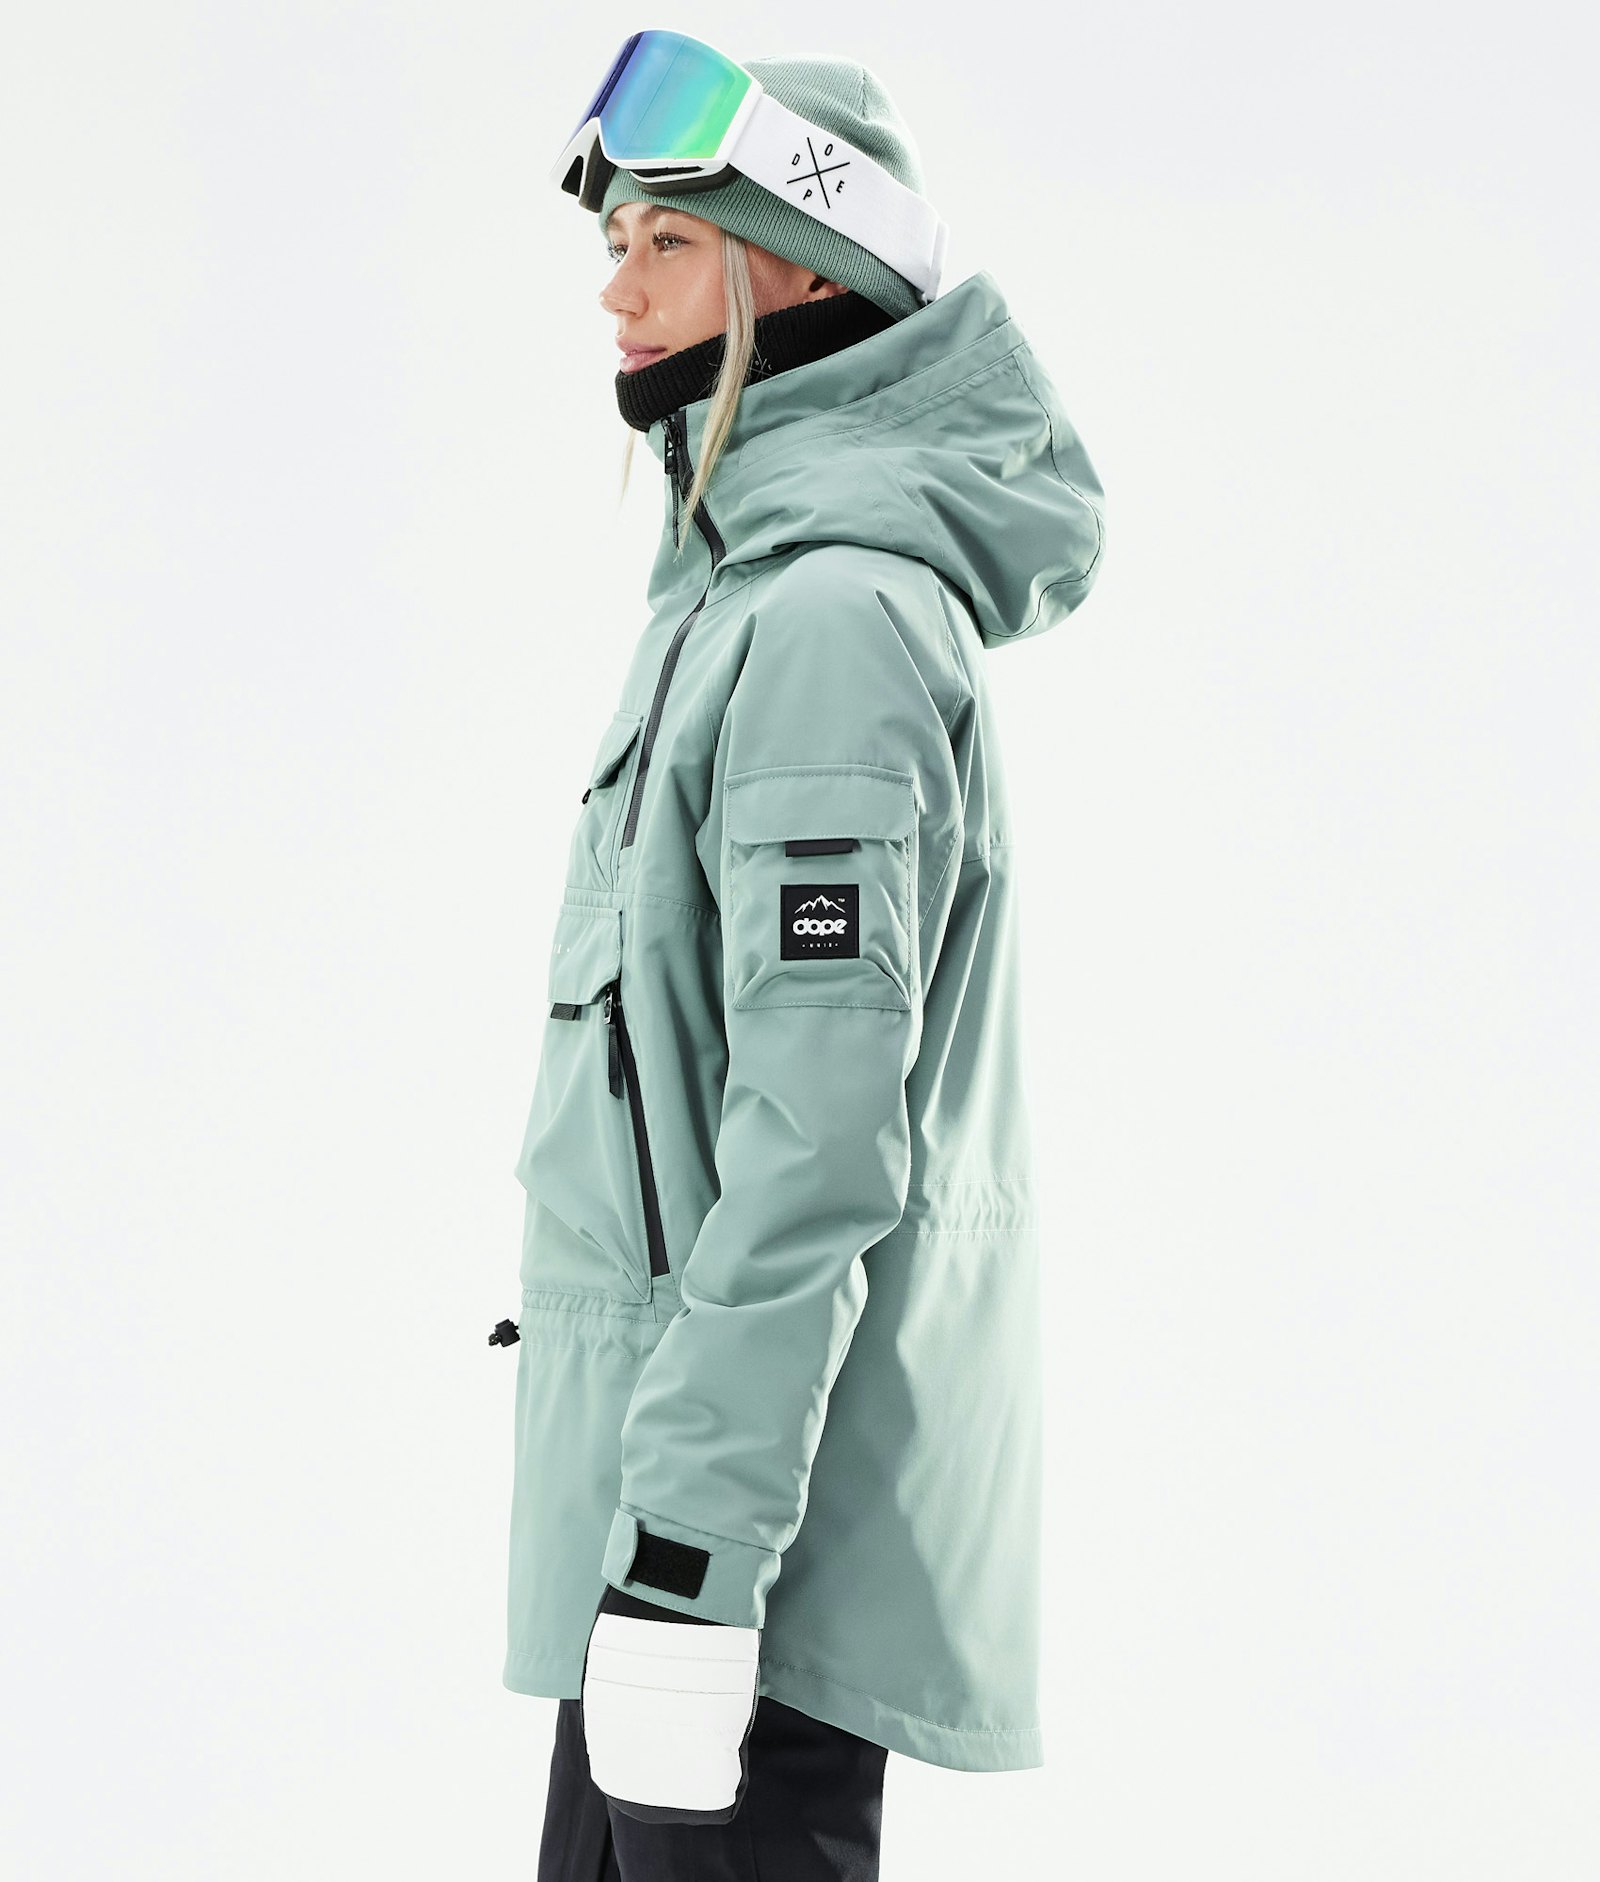 Akin W 2021 Snowboard Jacket Women Faded Green Renewed, Image 5 of 11